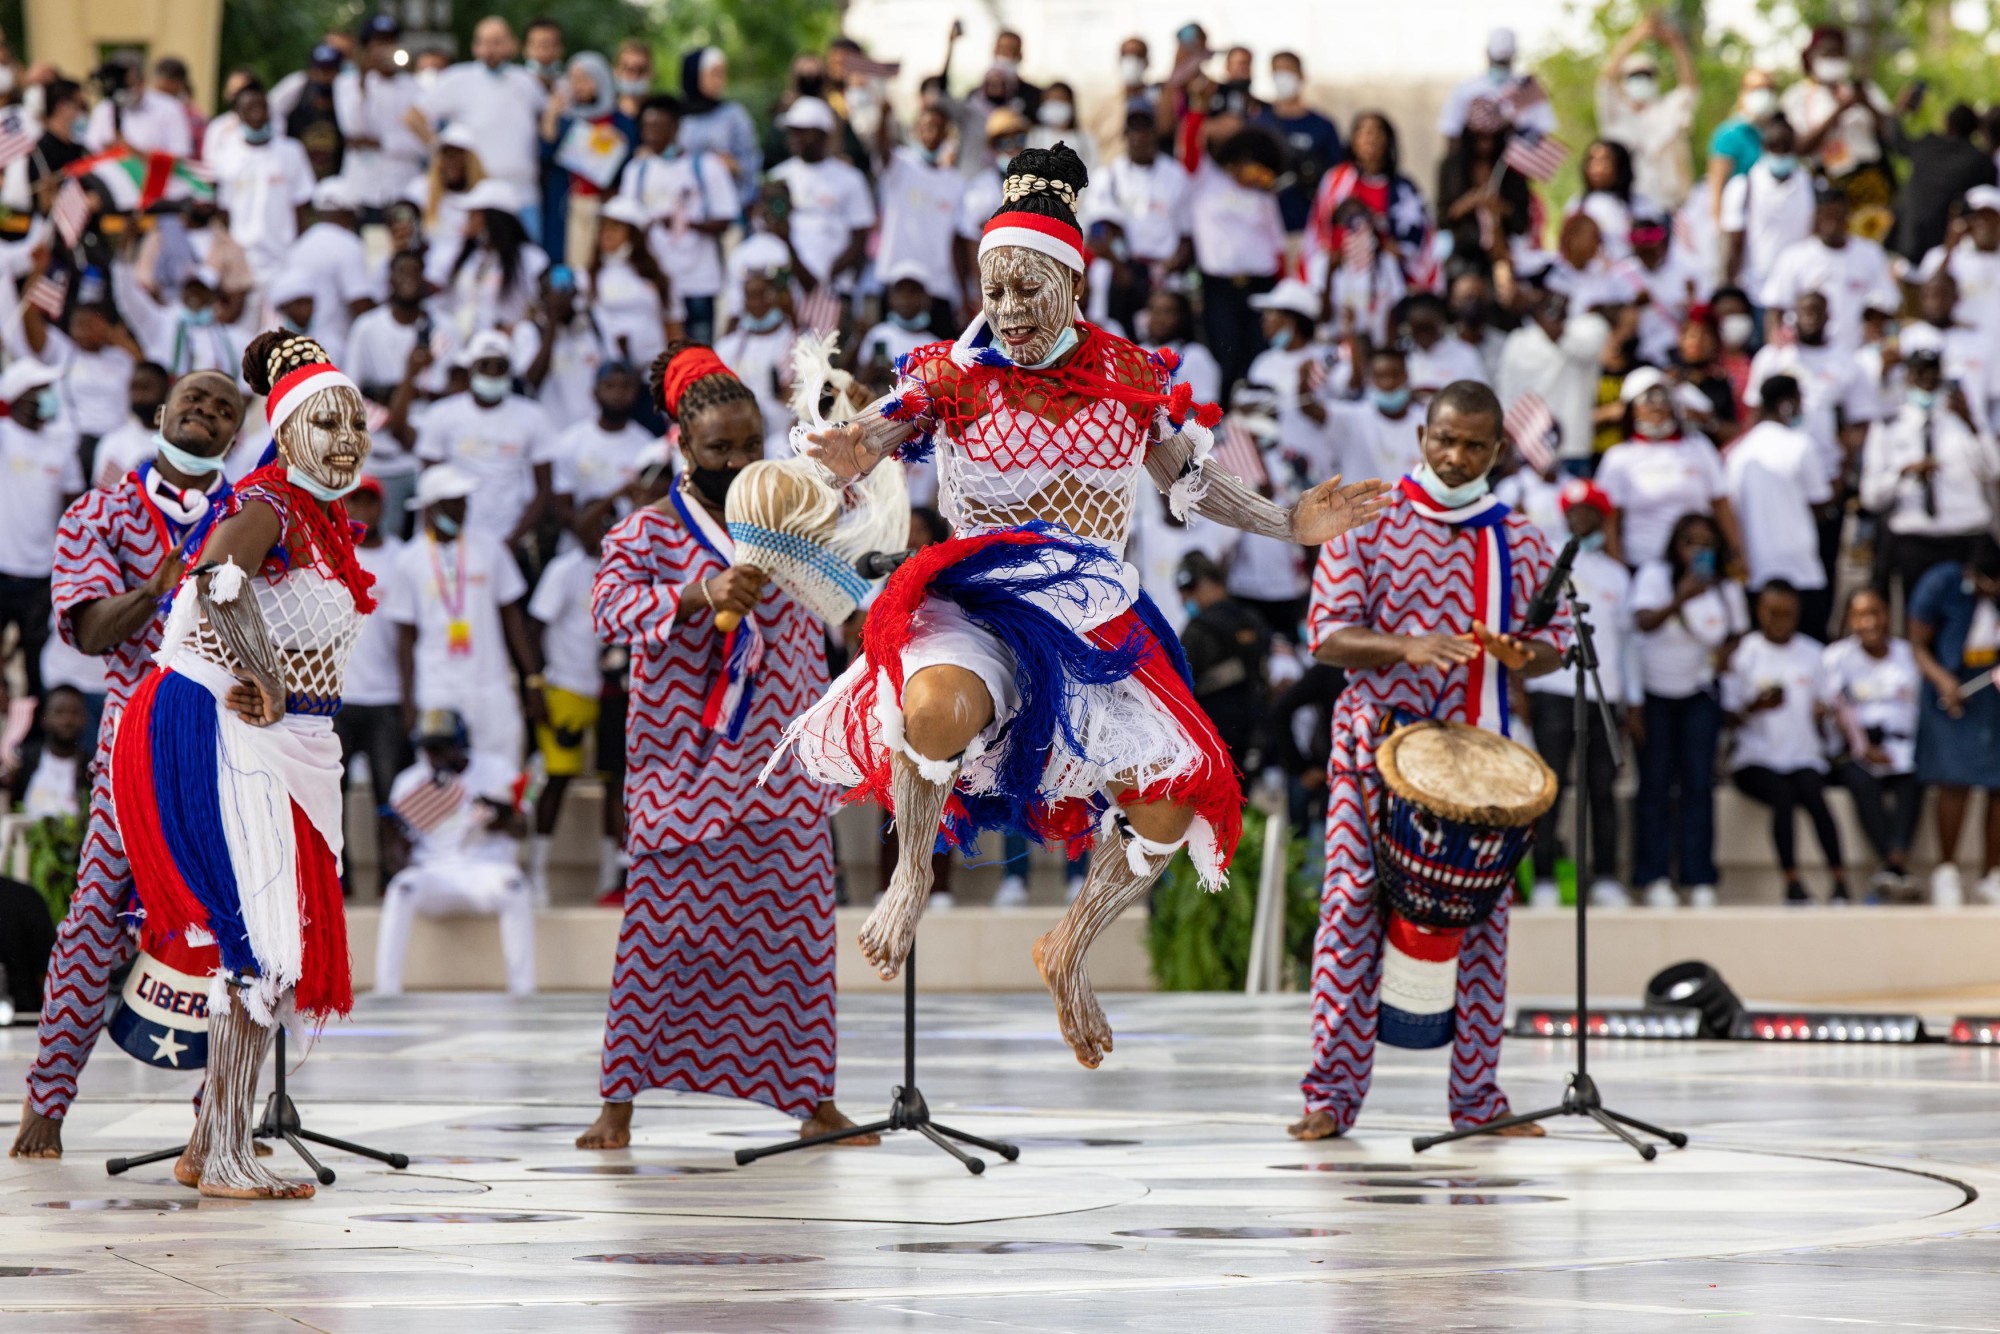 Liberia Cultural Performance at Al Wasl m15104